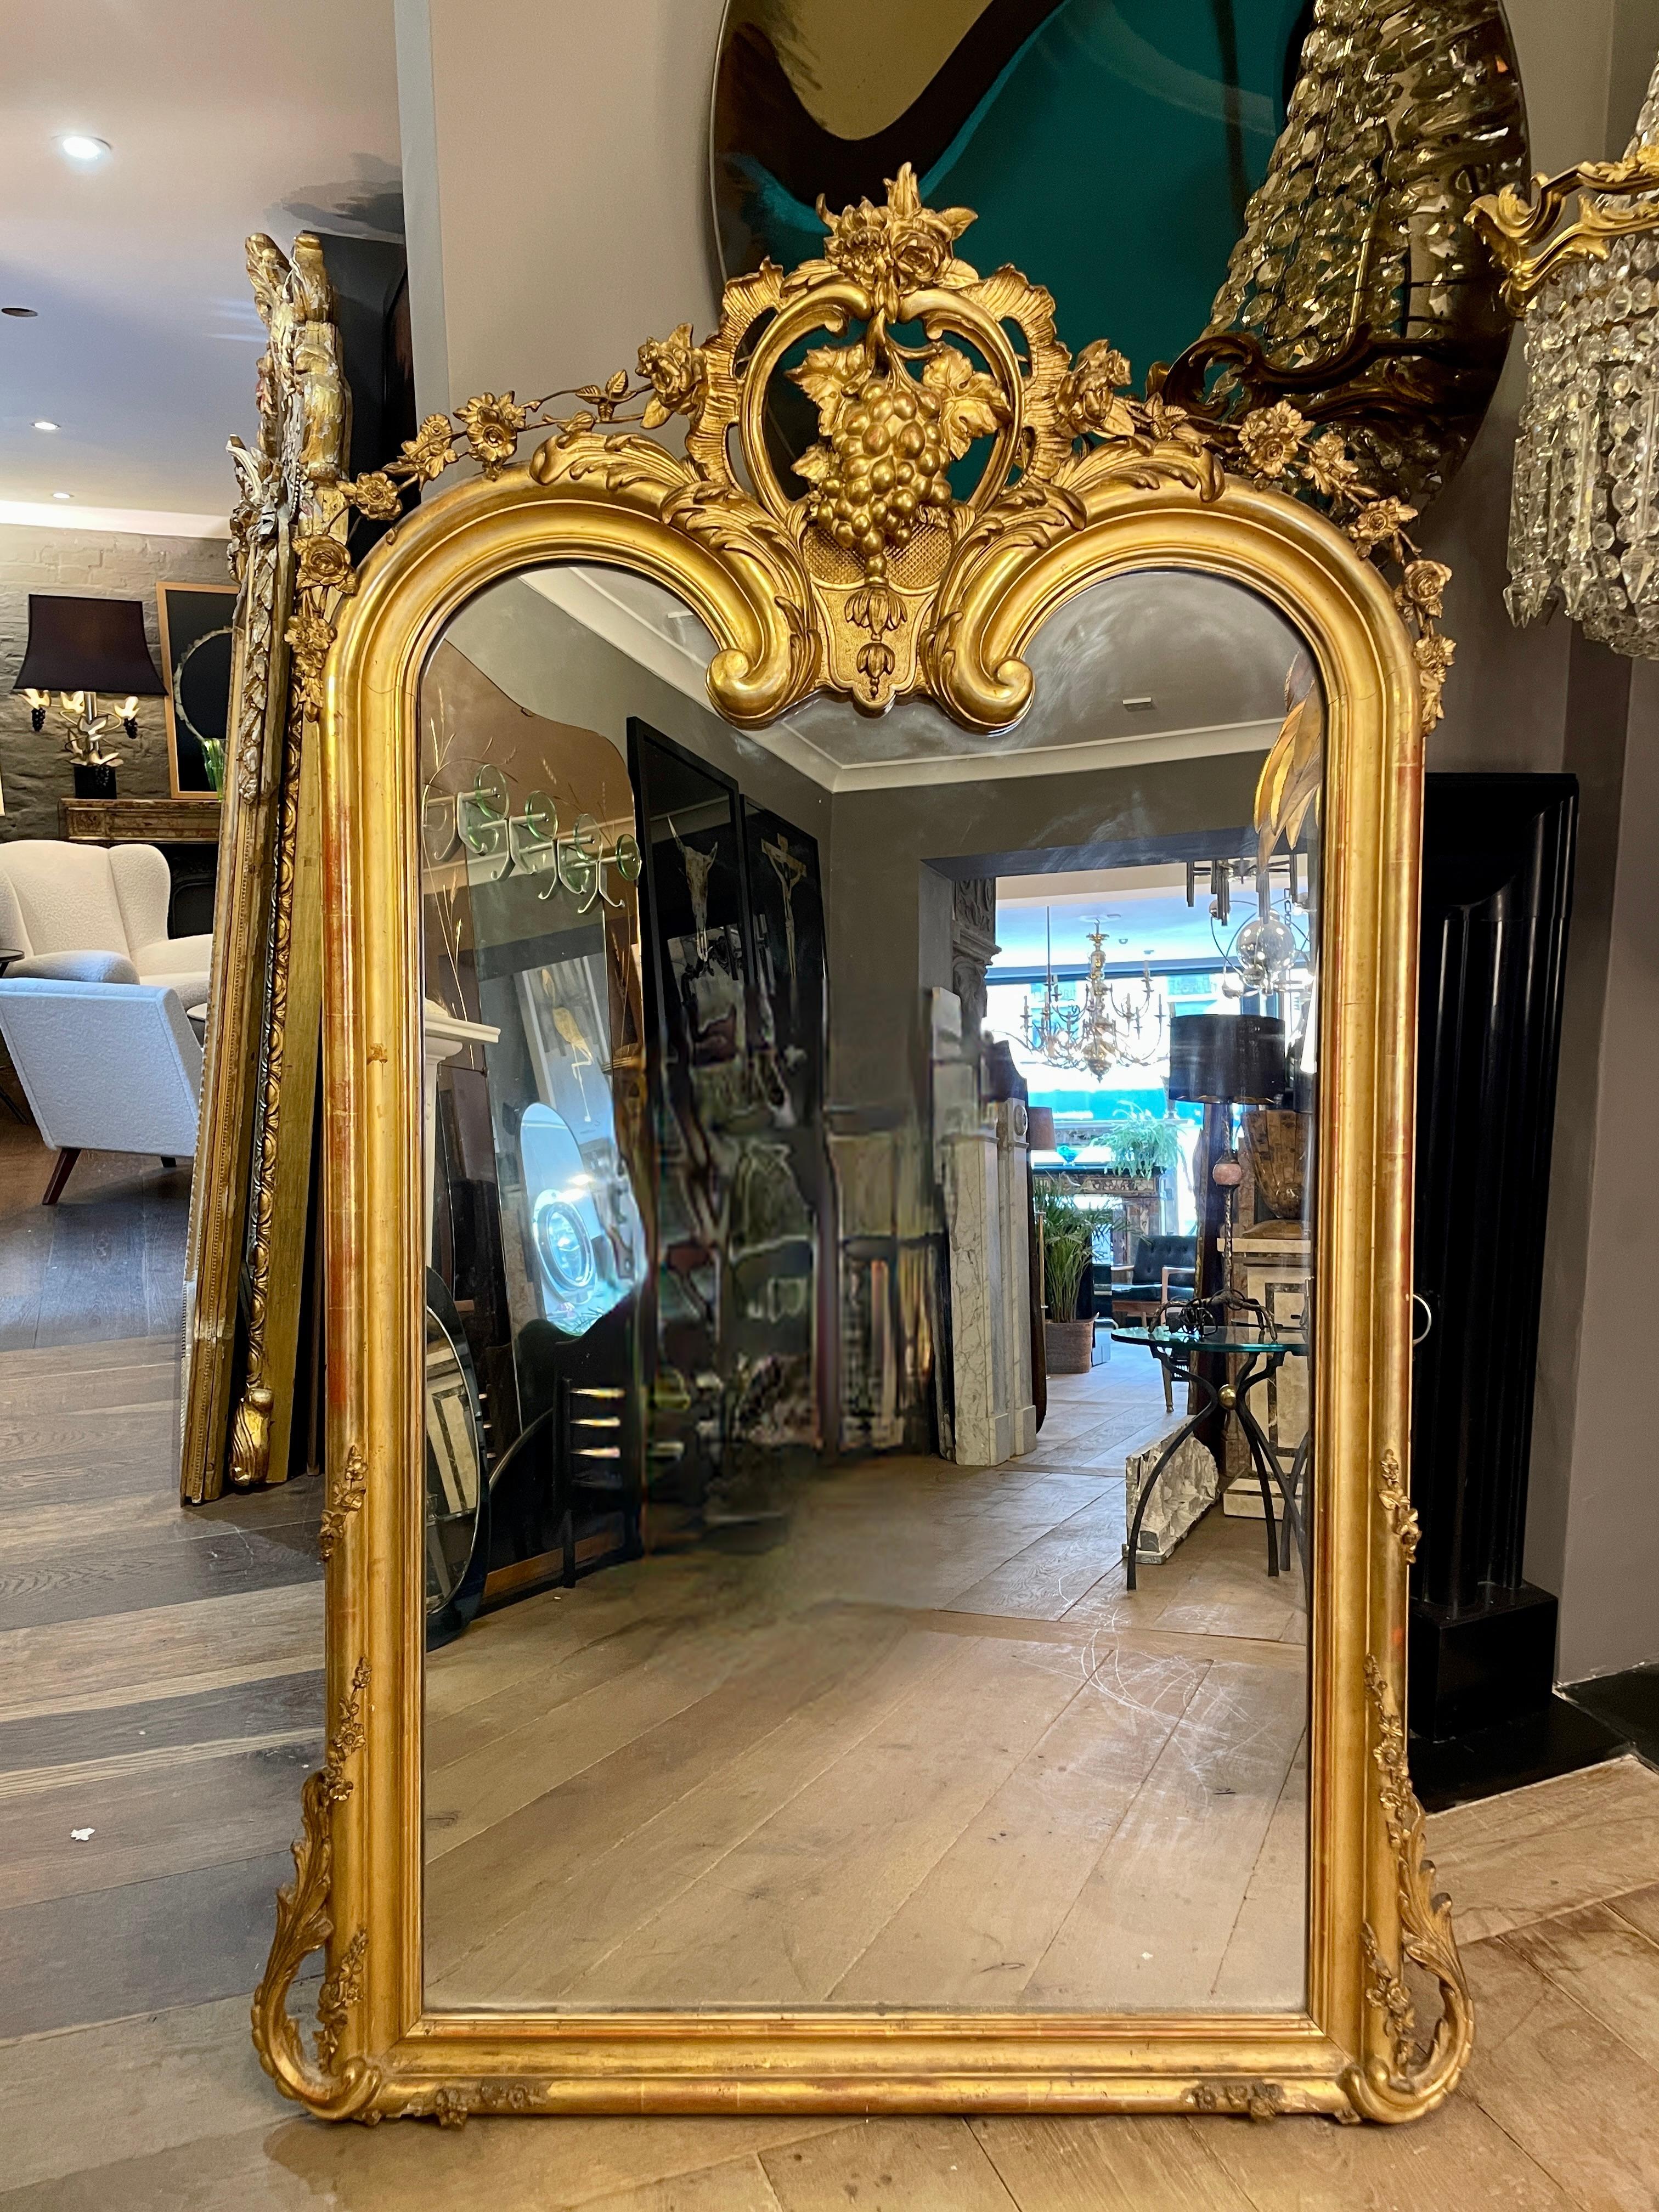 Un miroir doré de très bonne qualité du début du 19ème siècle, de style Louis XV. Le dessus du miroir est de forme inhabituelle, avec un grand cartouche central élaboré de feuillages en volutes et un grand centre de vigne. Une décoration florale et